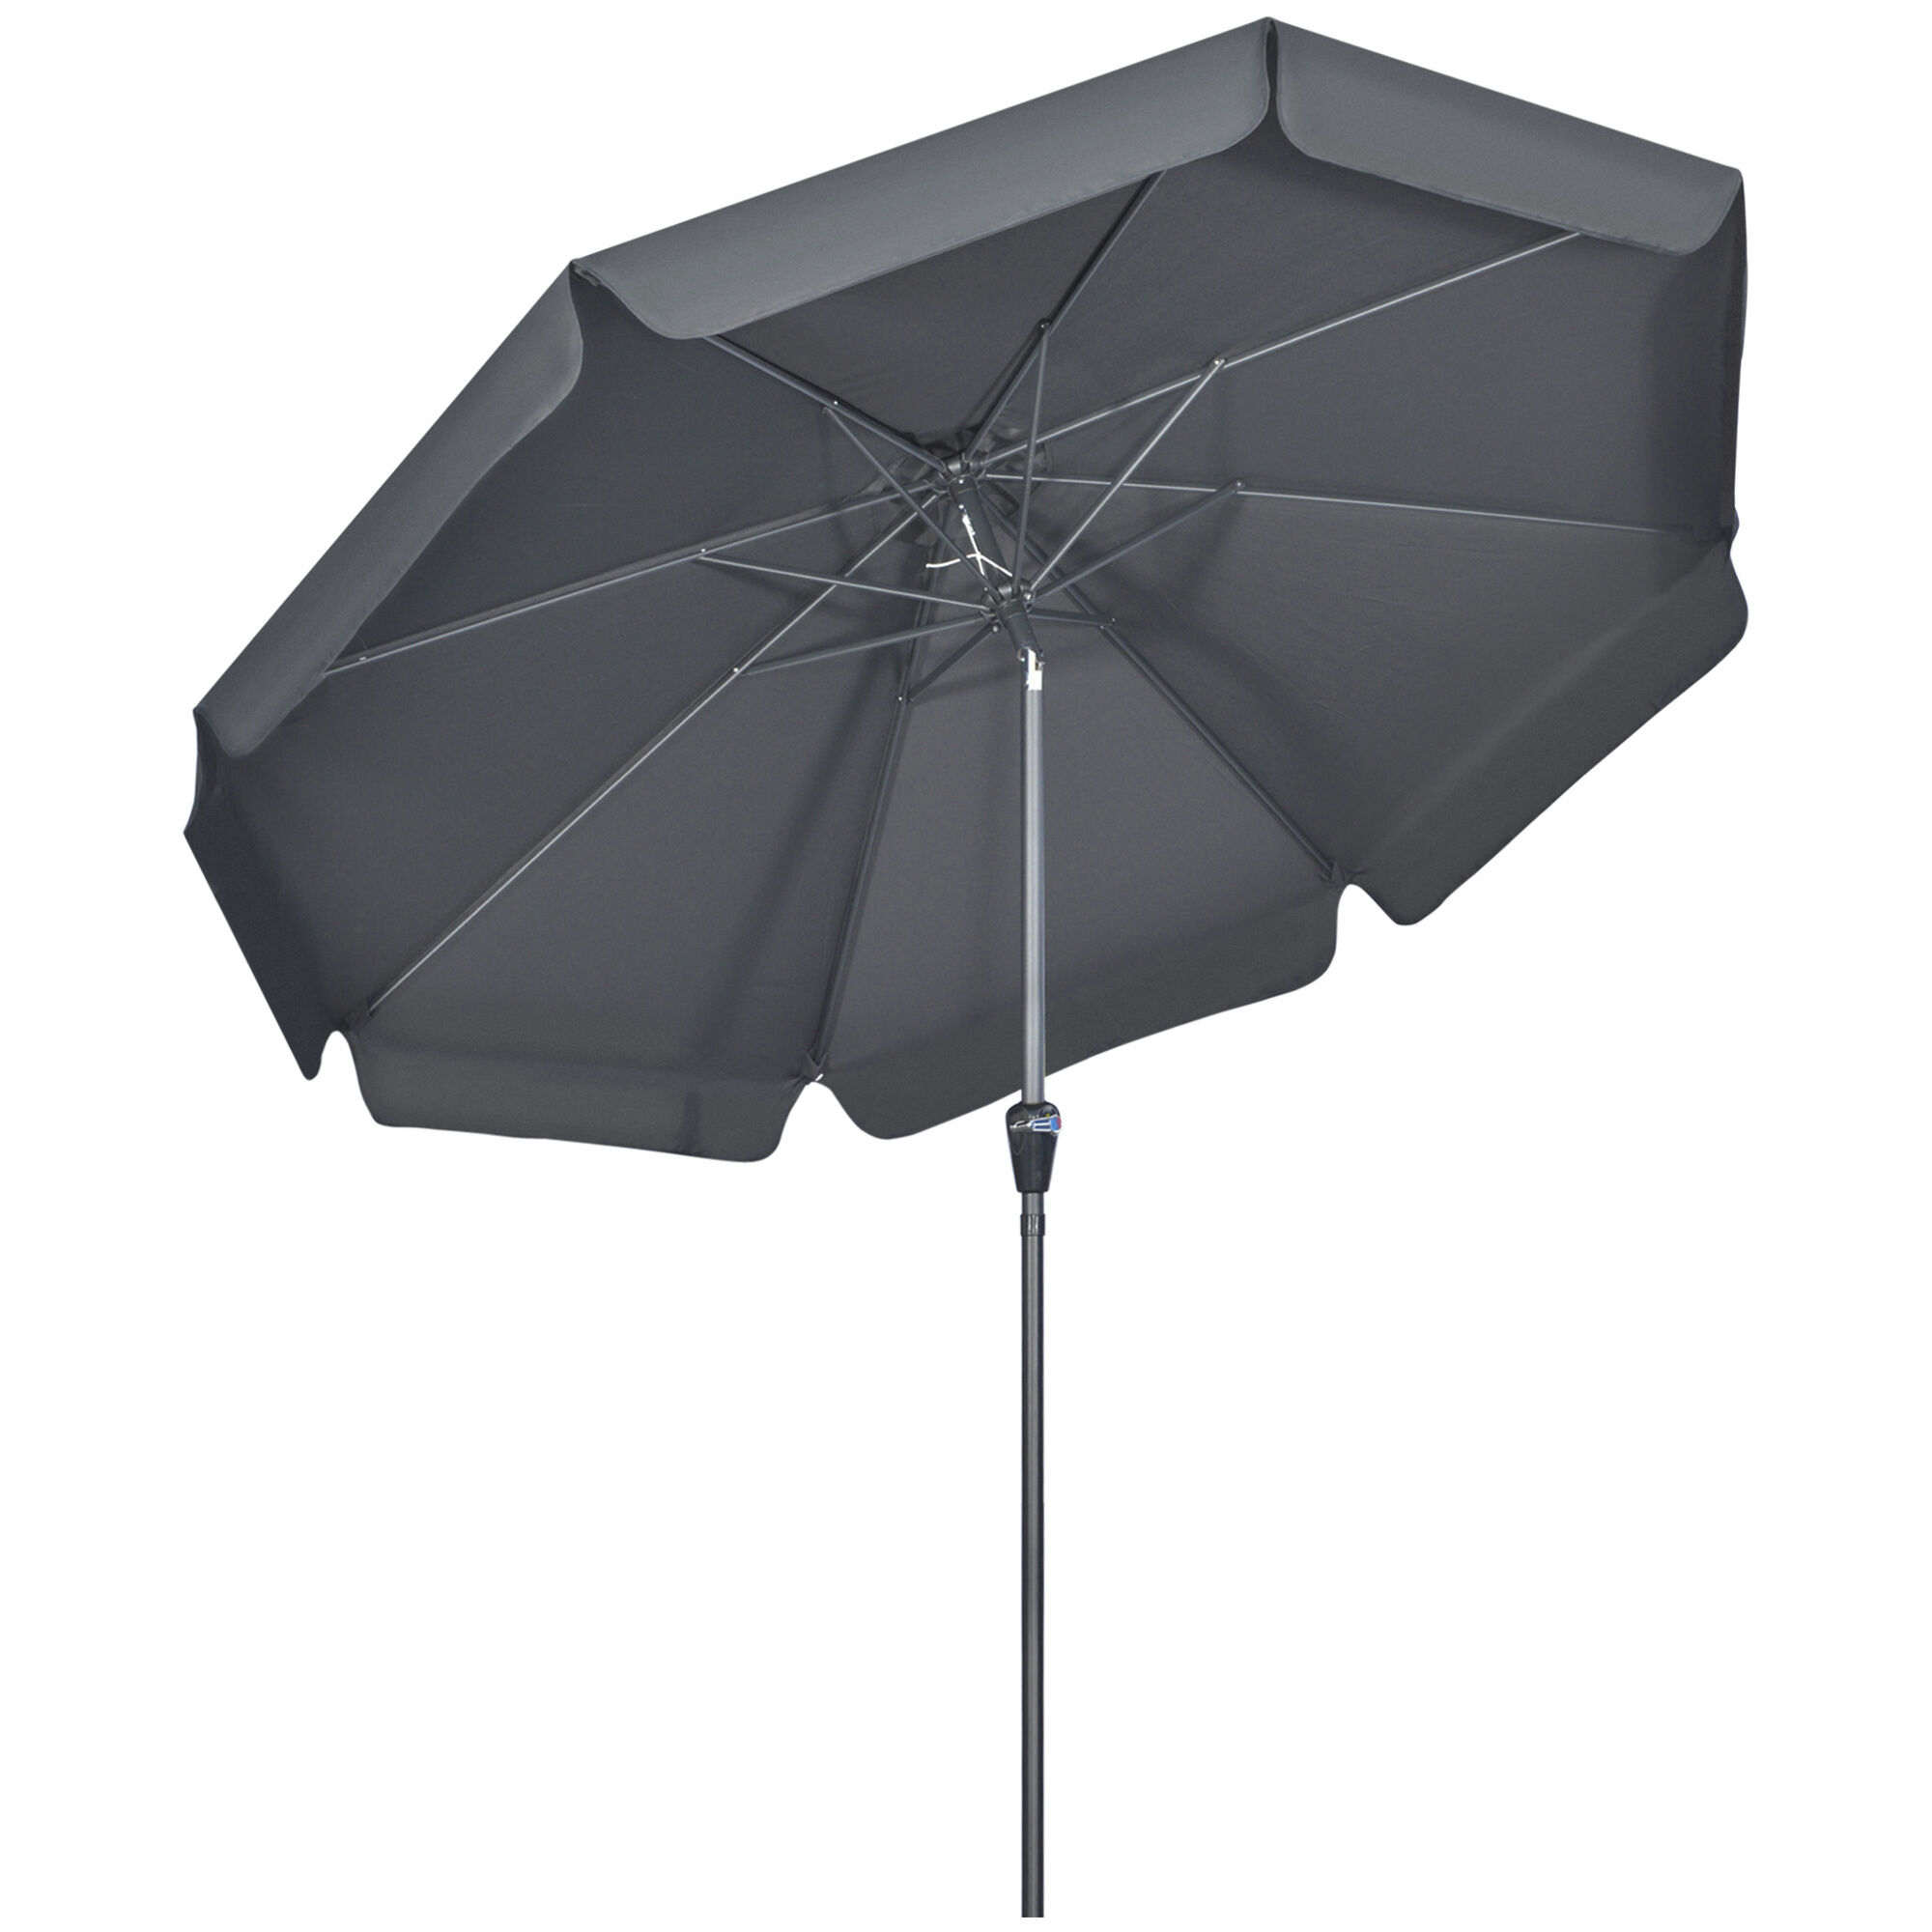 Outsunny 2.7m Garden Parasol, Outdoor Patio Sun Shade Umbrella with Tilt, Crank, 8 Ribs, Ruffles, Black